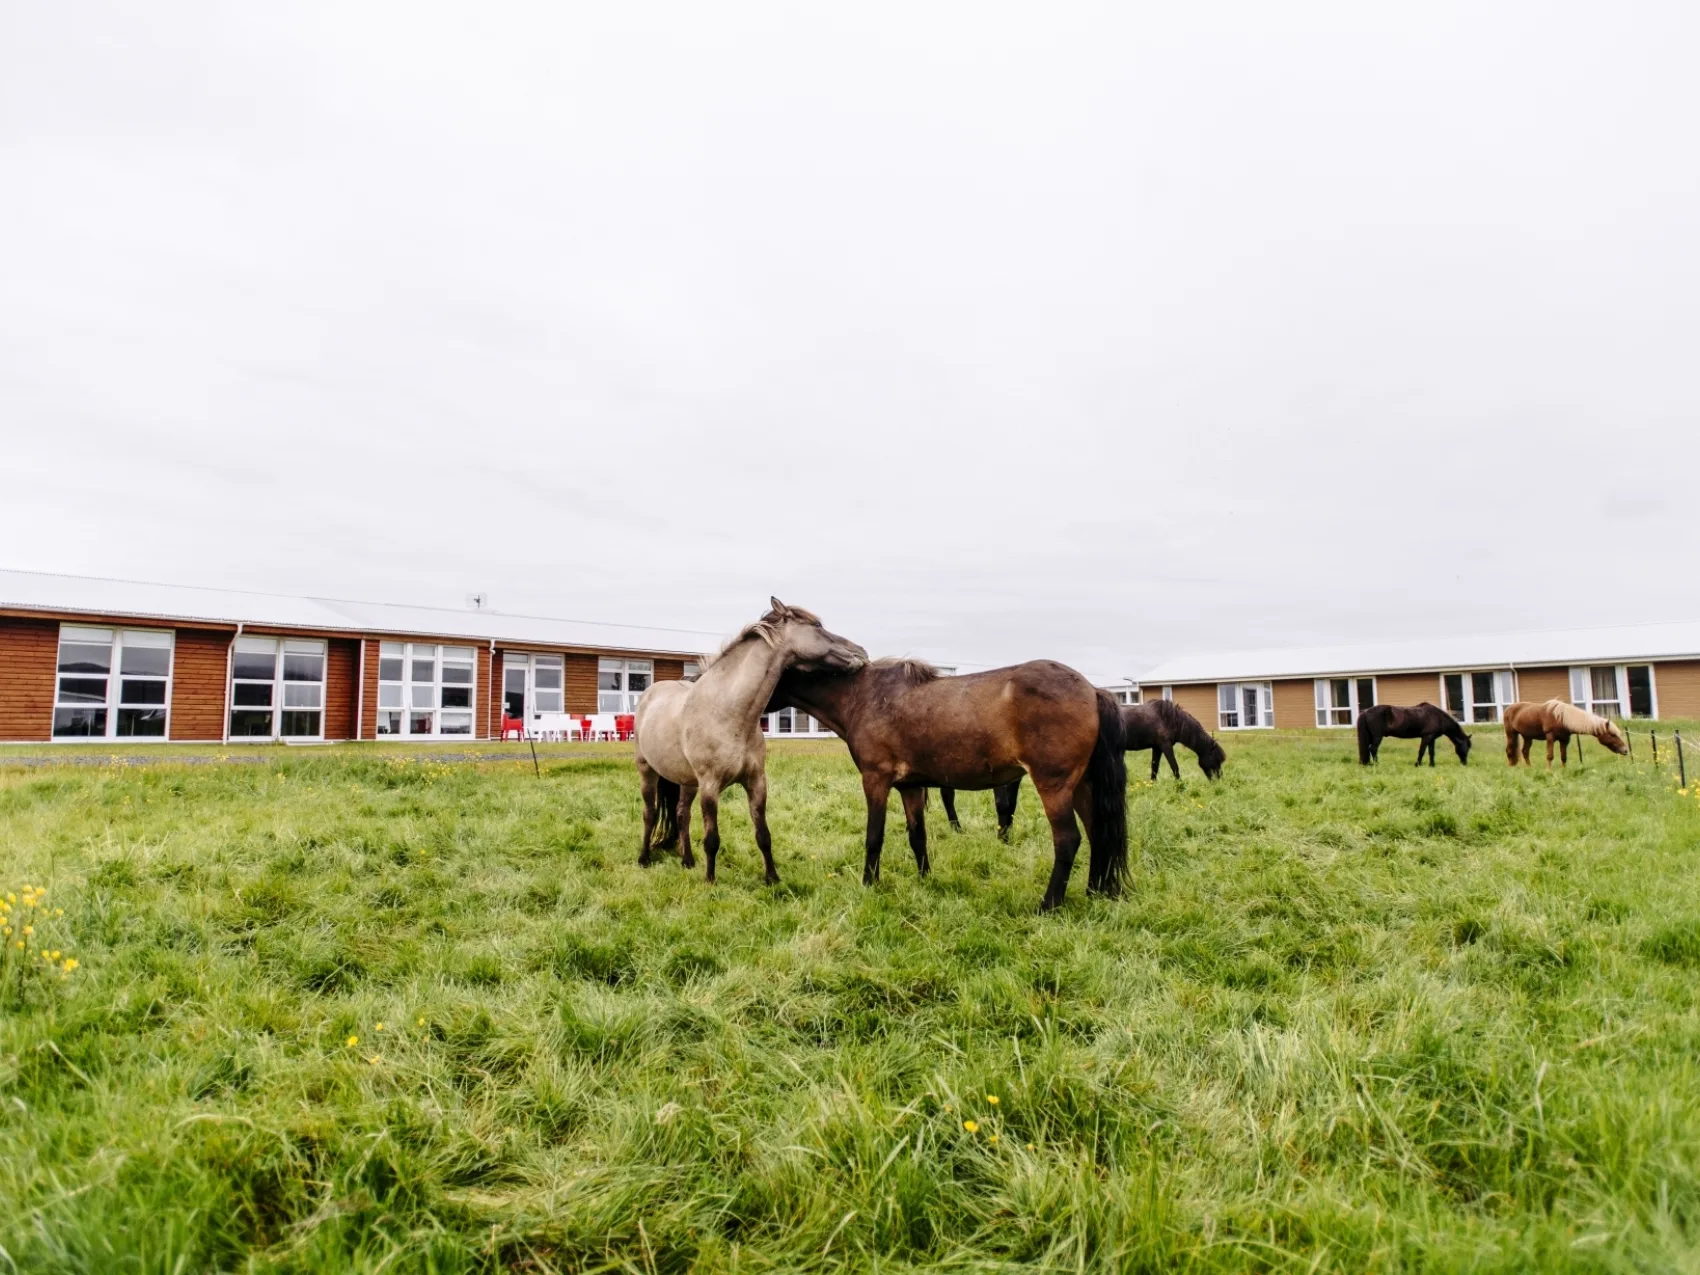 Reittour Island; 
Pferde stehen auf einer grünen Wiese von flachen Gebäude umgeben. Zwei Pferde im Zentrum putzen sich gegenseitig am Hals.